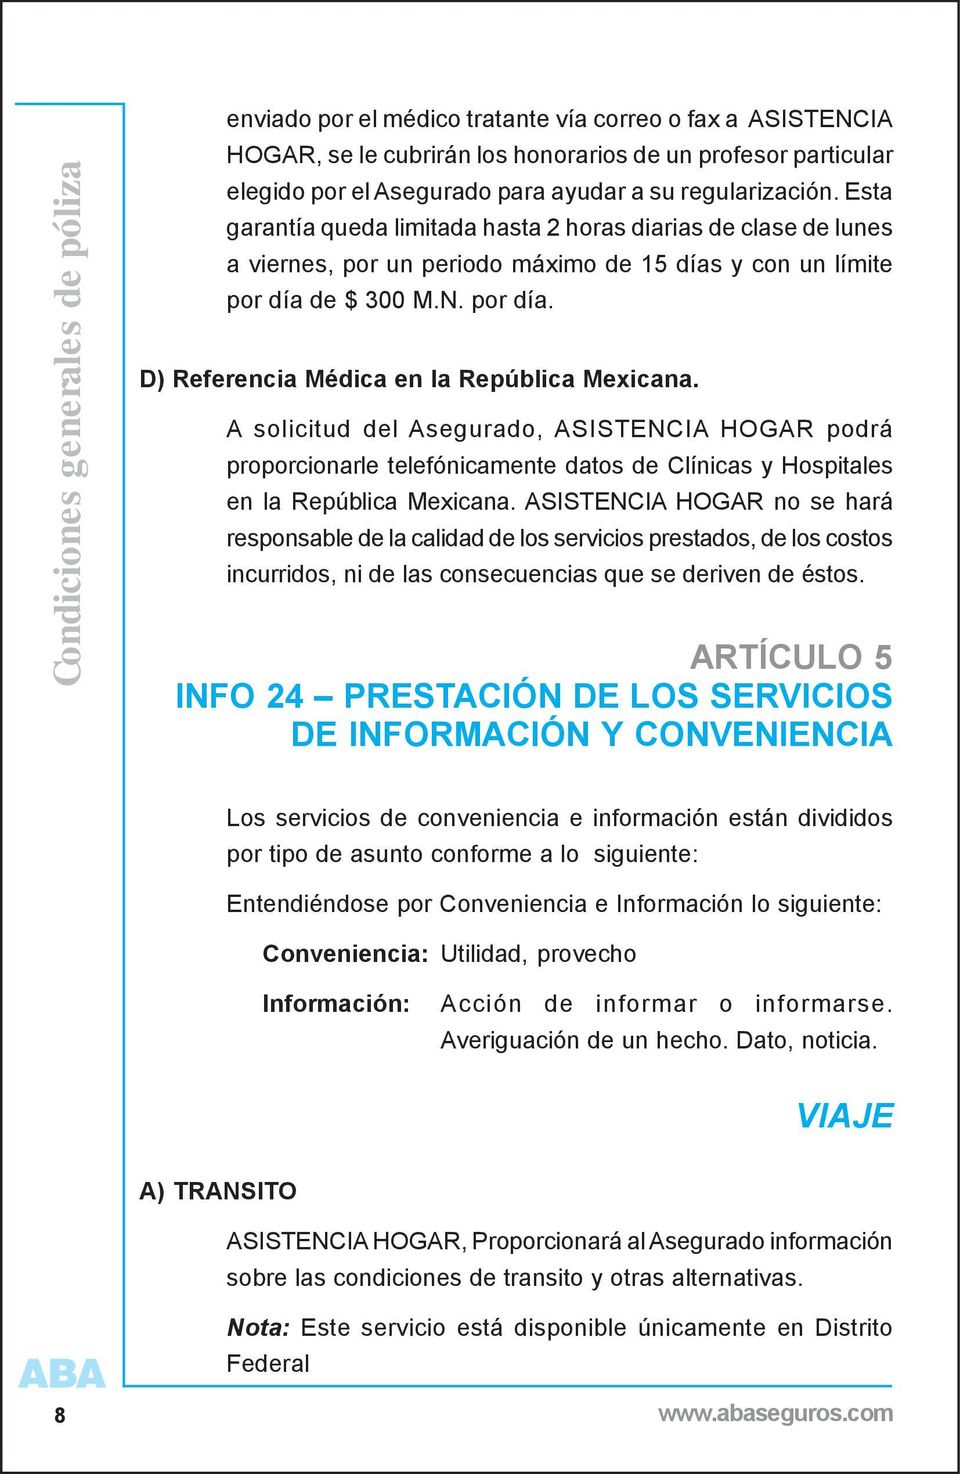 A solicitud del Asegurado, ASISTENCIA HOGAR podrá proporcionarle telefónicamente datos de Clínicas y Hospitales en la República Mexicana.